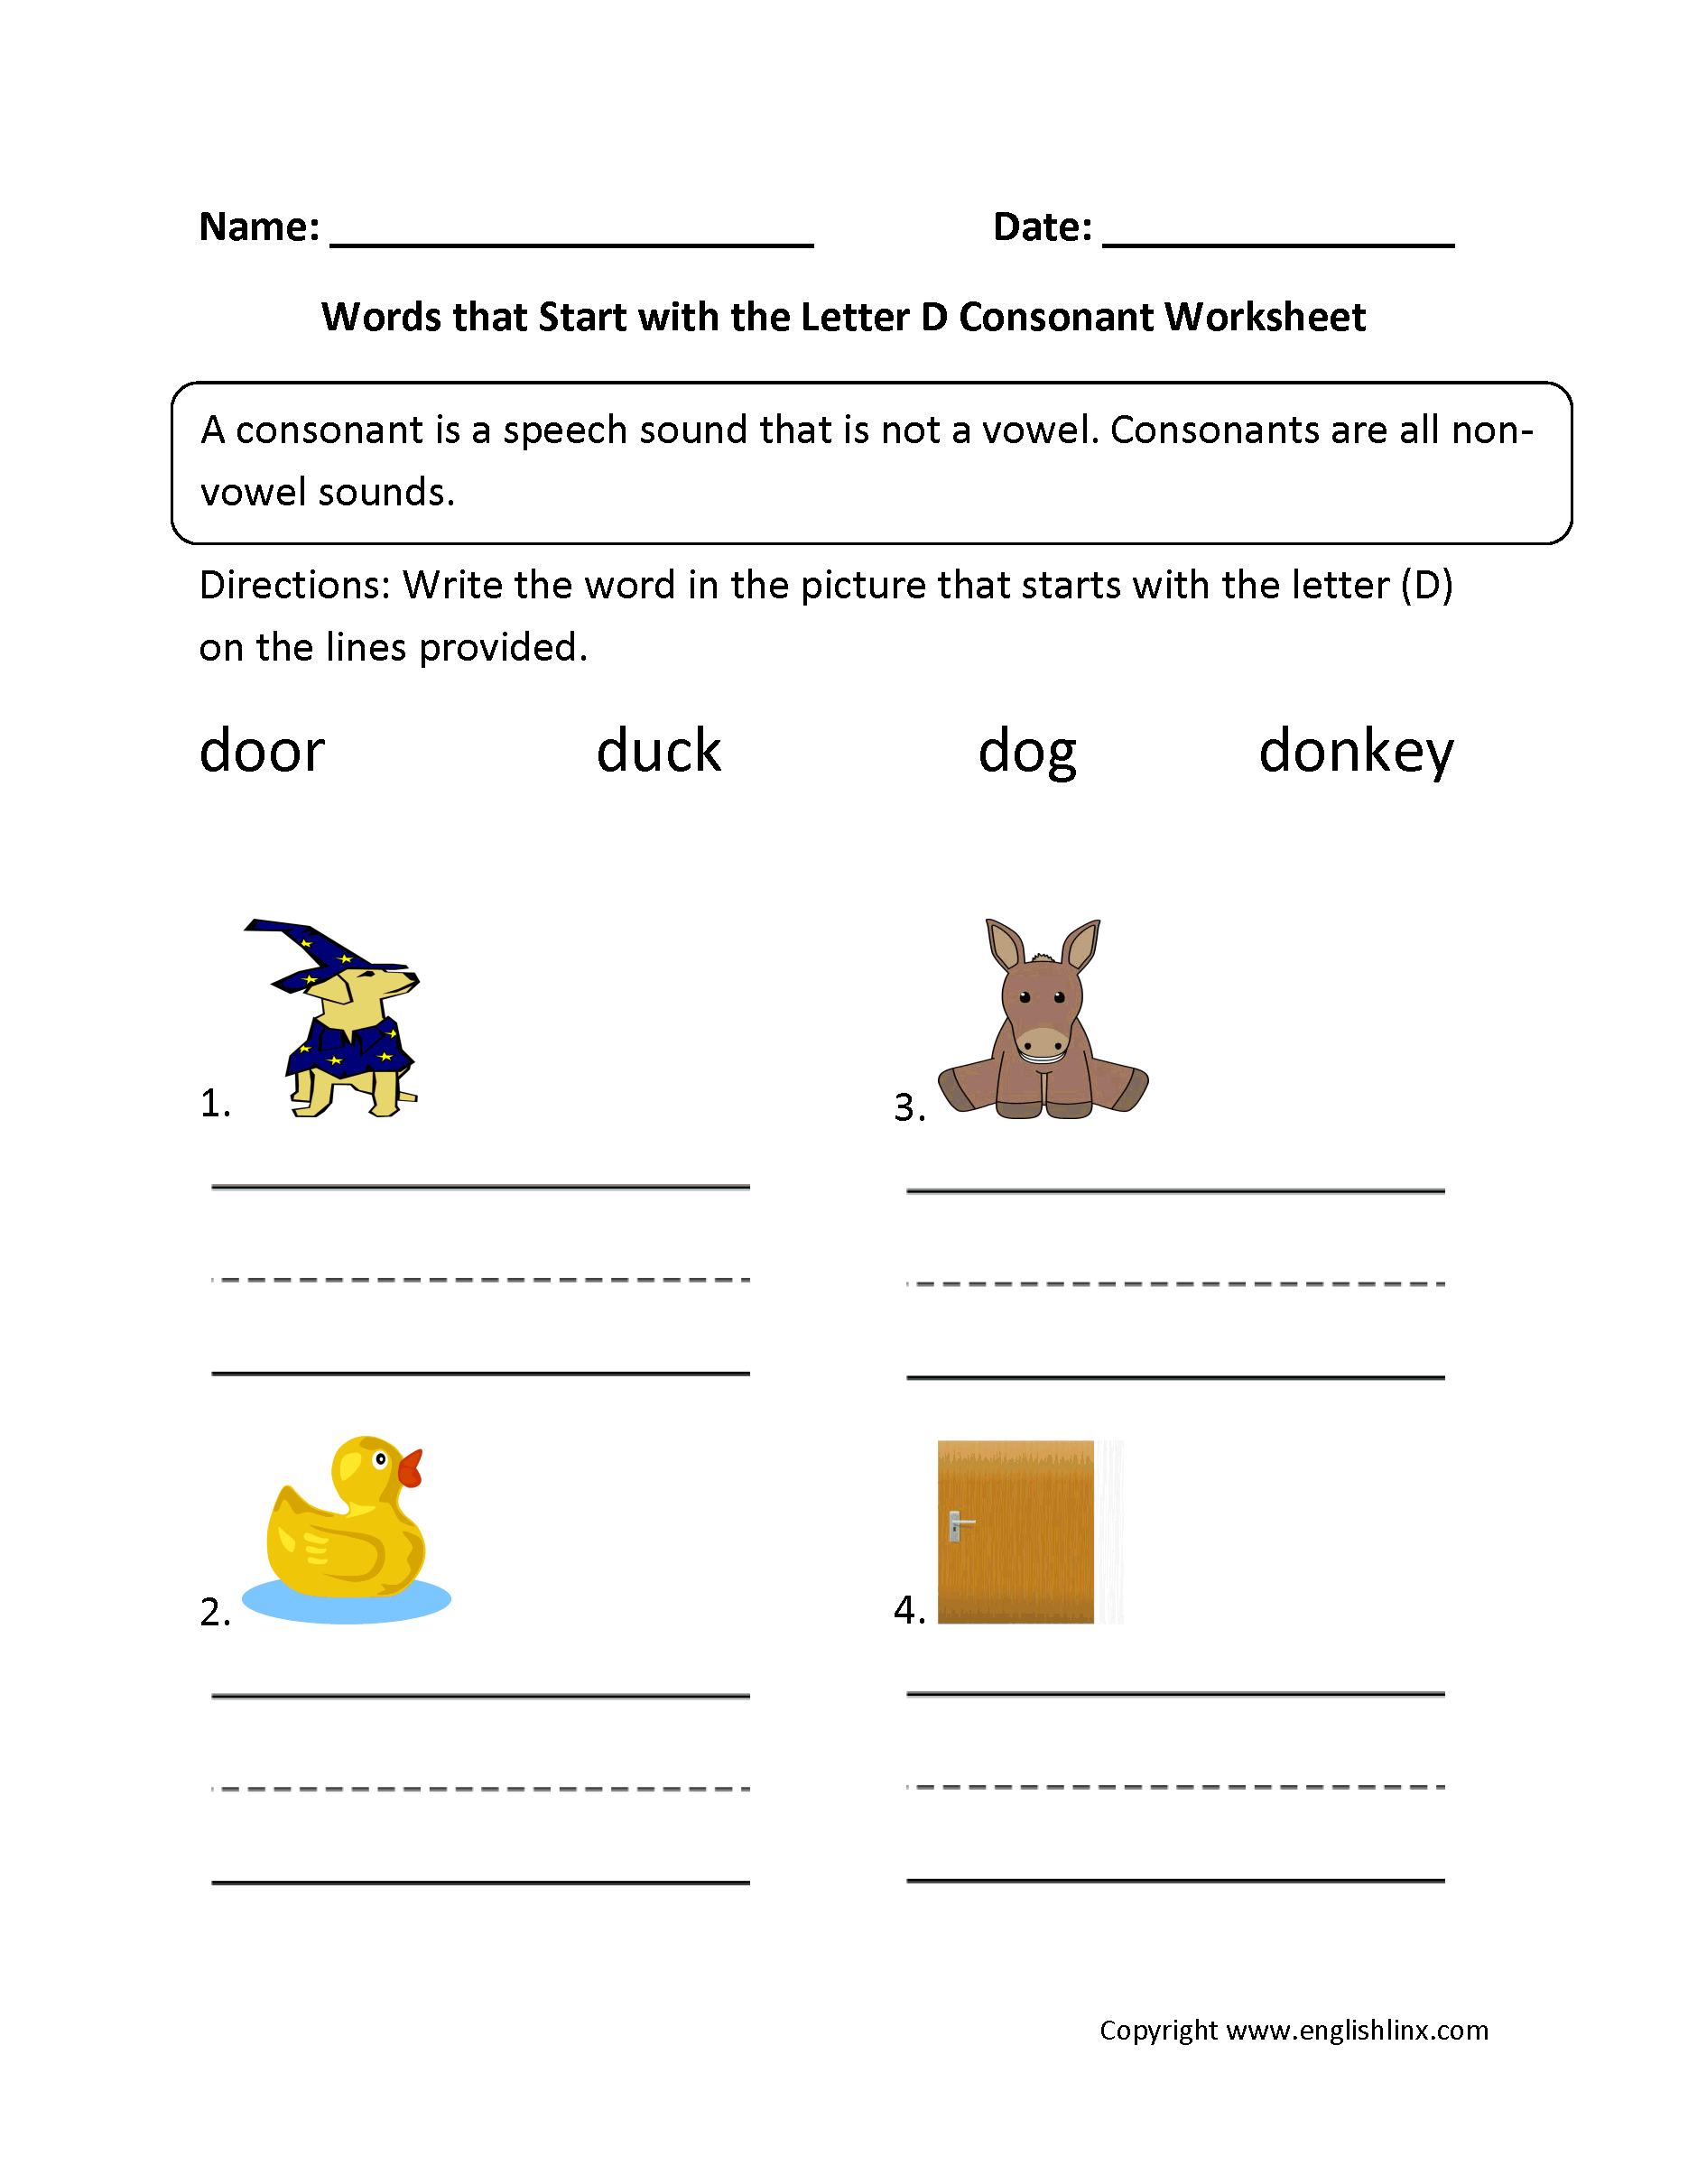 Words Start Letter D Consonant Worksheets